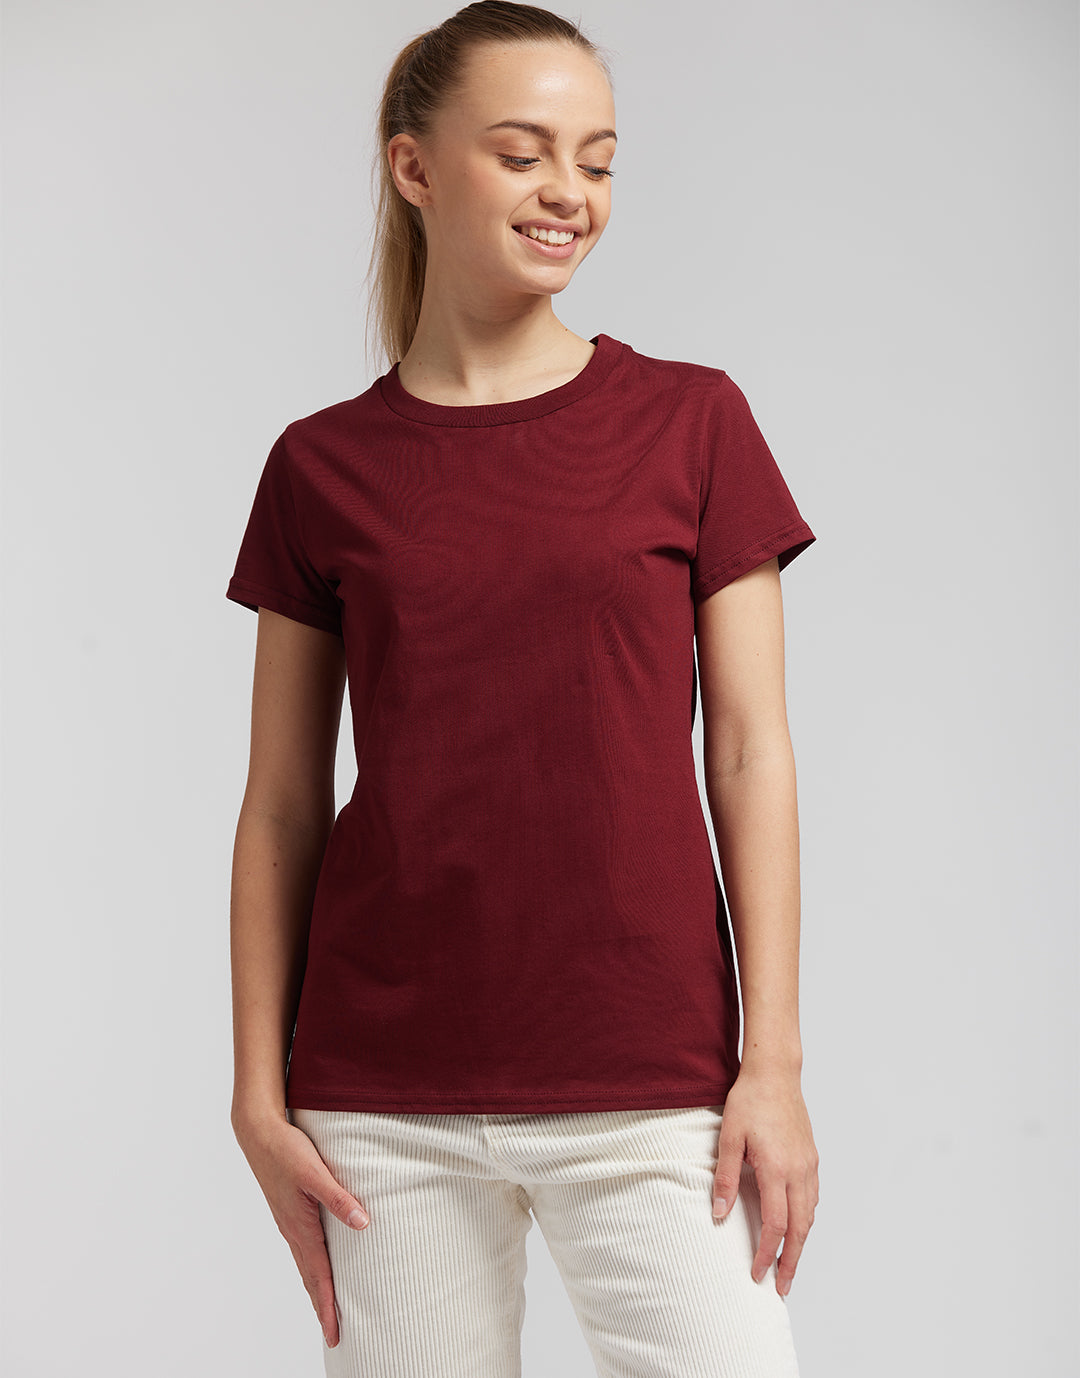 Weil - T-shirt coton bio femme - couleurs